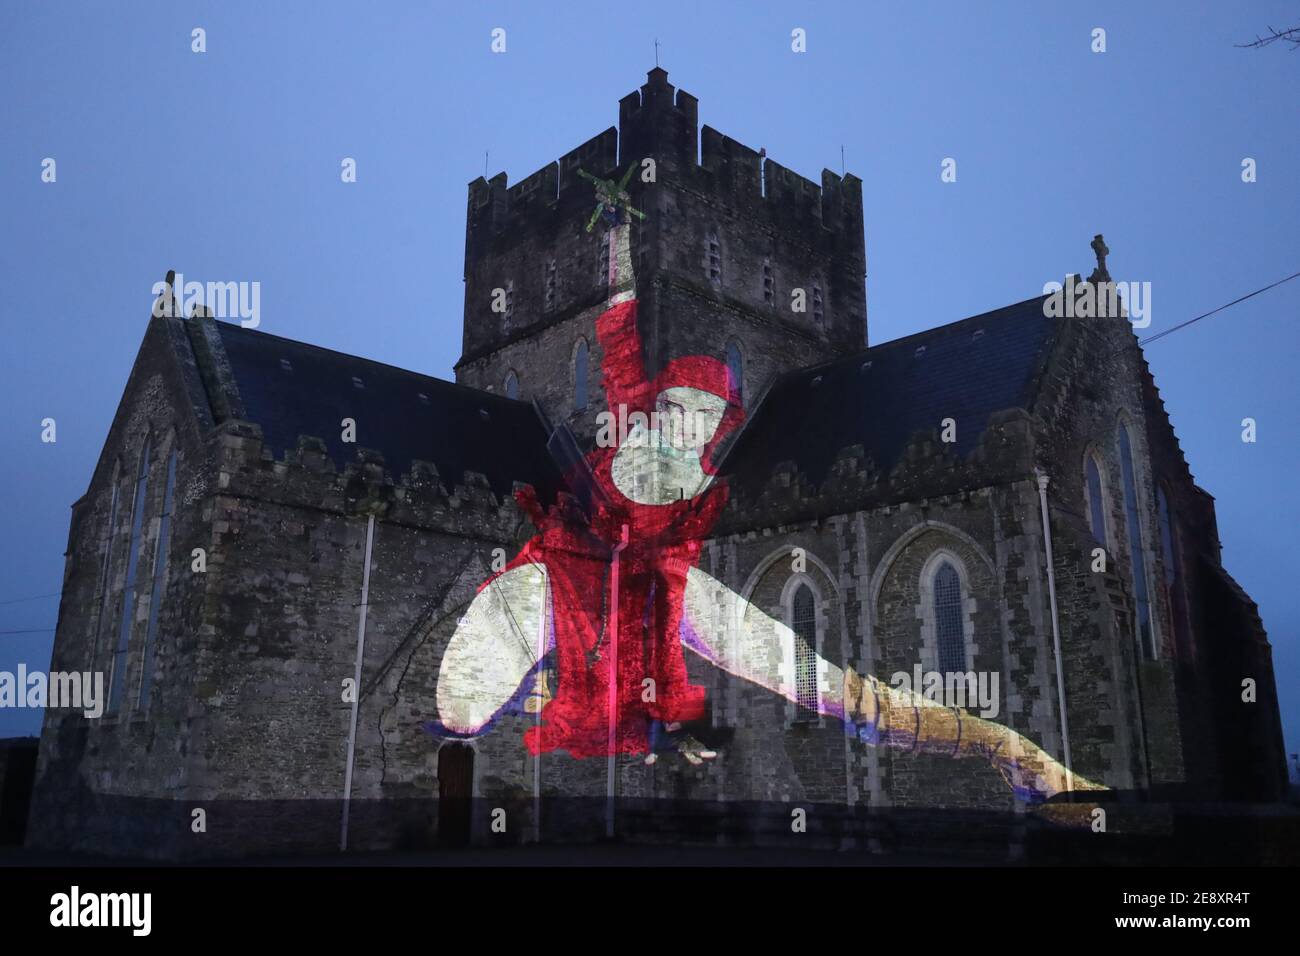 Eine Nonne in Rot mit einem Kruzifix, das im Rahmen der Herstory Light Show auf der St. Brigid's Cathedral, Kildare, am St. BrigidÕs Day projiziert wird, als Wahrzeichen in ganz Irland beleuchtet wurden, um Überlebende von Mutter- und Babyhäusern zu ehren, als Teil einer Veranstaltung zum St. Brigid's Day. Bilddatum: Montag, 1. Februar 2021. Stockfoto